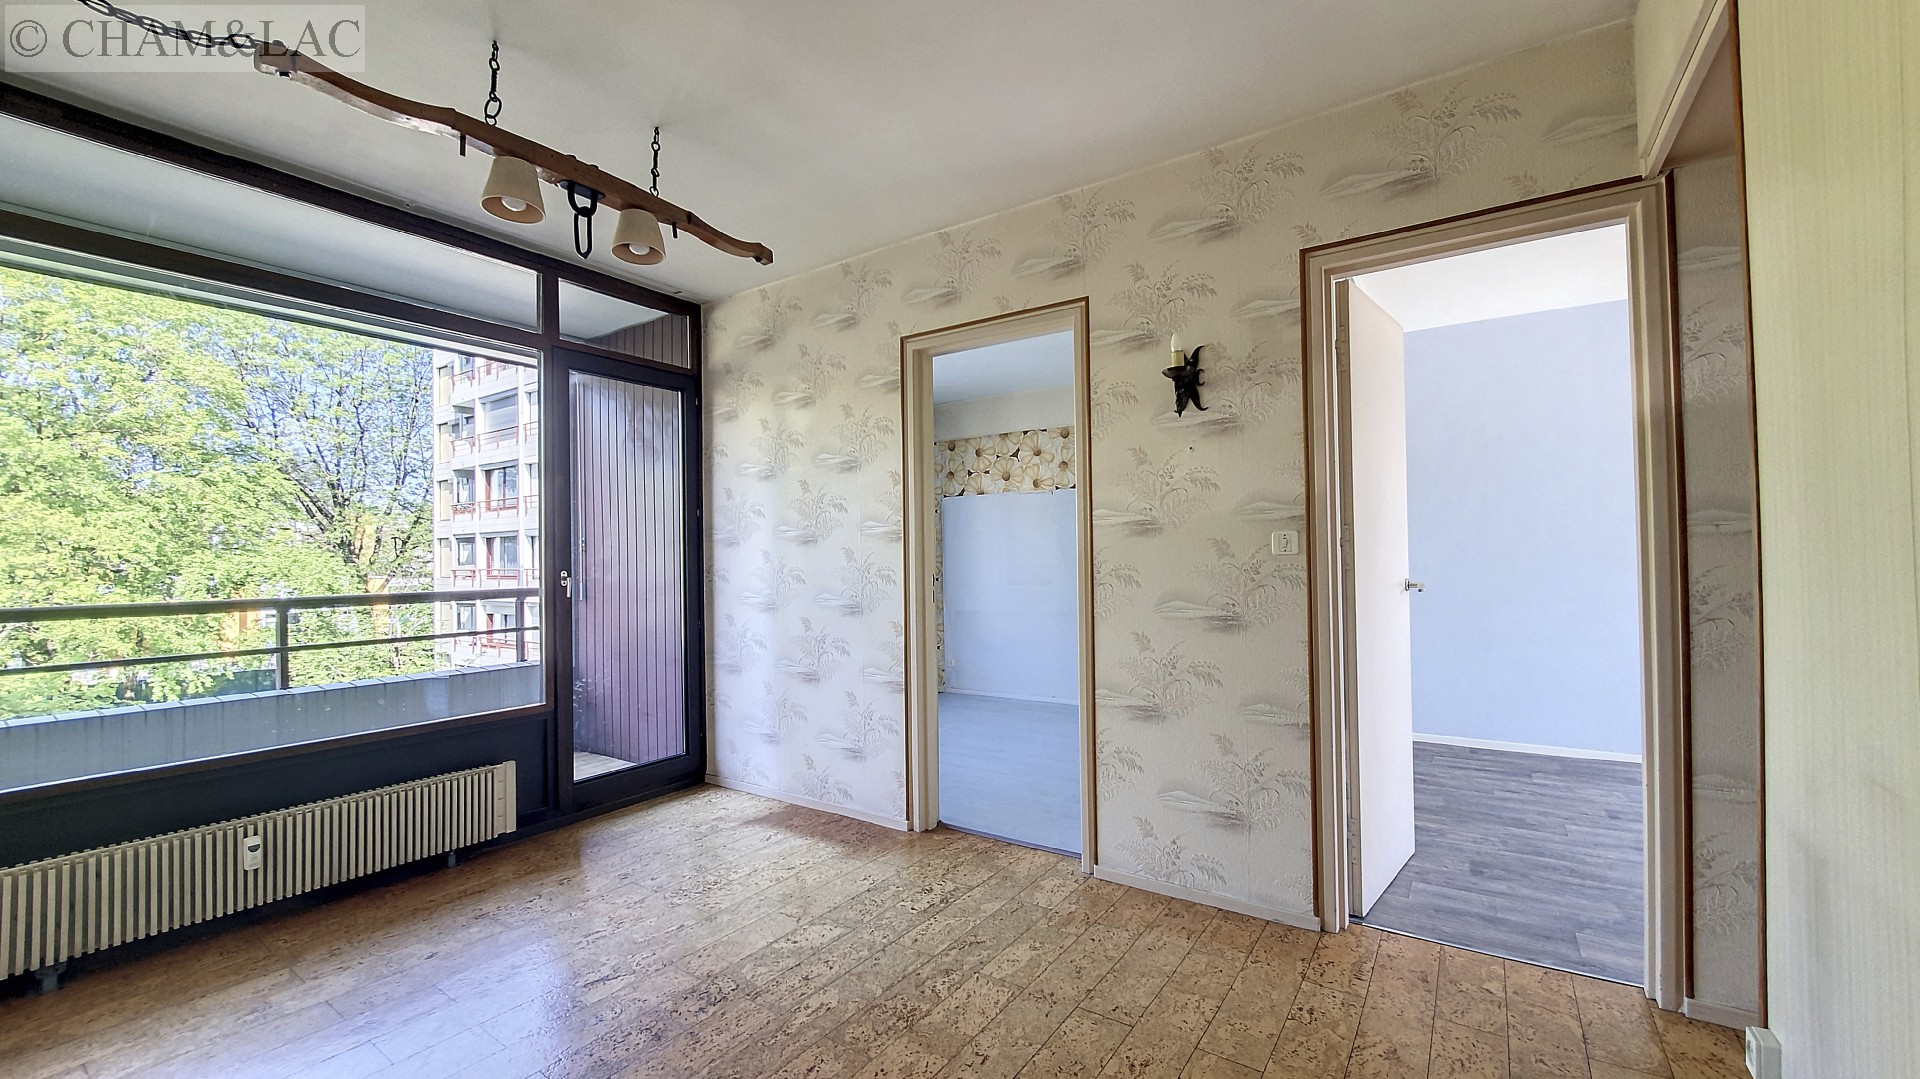 Appartement à vendre, ANNECY (SEYNOD), 99 m², 5 pièces